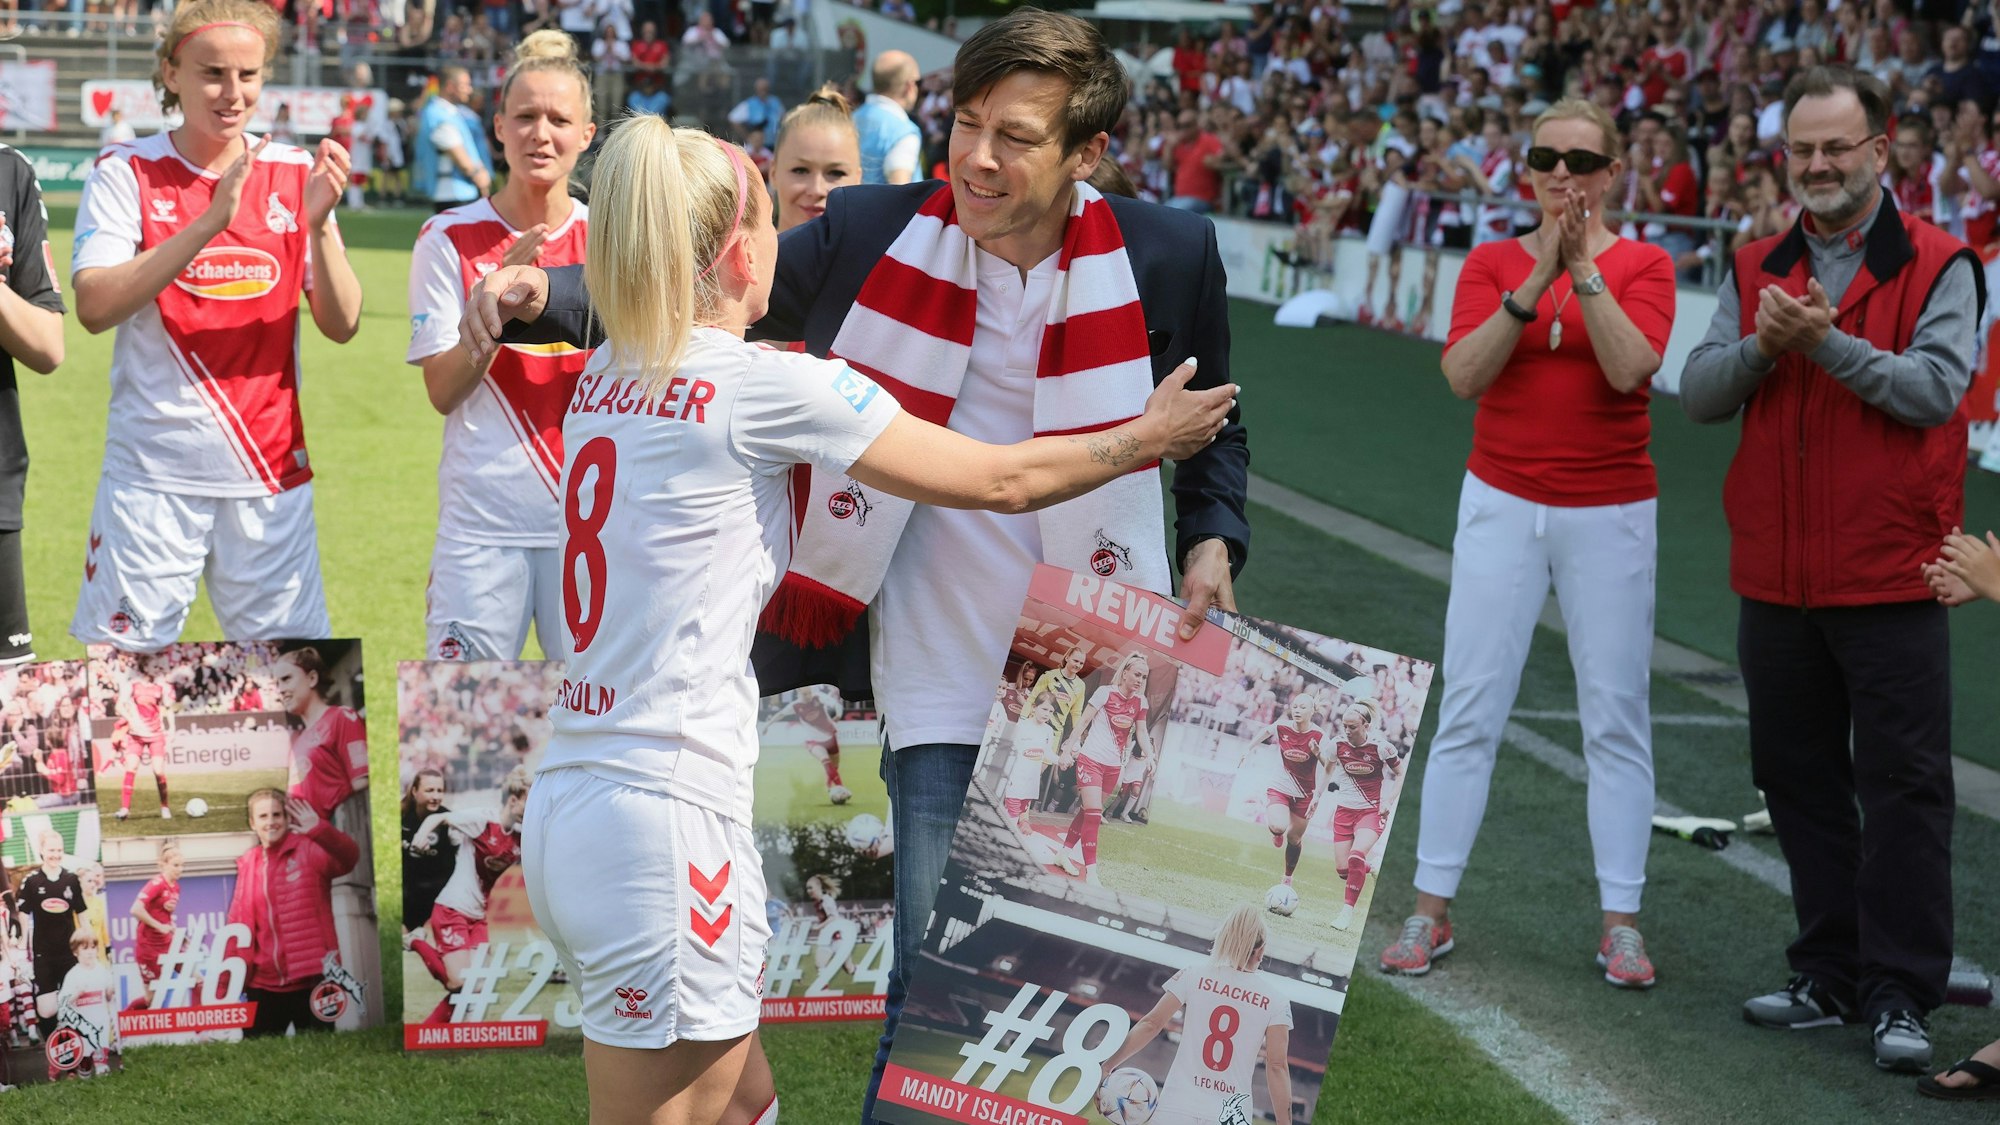 FC-Vizepräsident Carsten Wettich verabschiedet Mandy Islacker nach dem Spiel gegen Essen.

